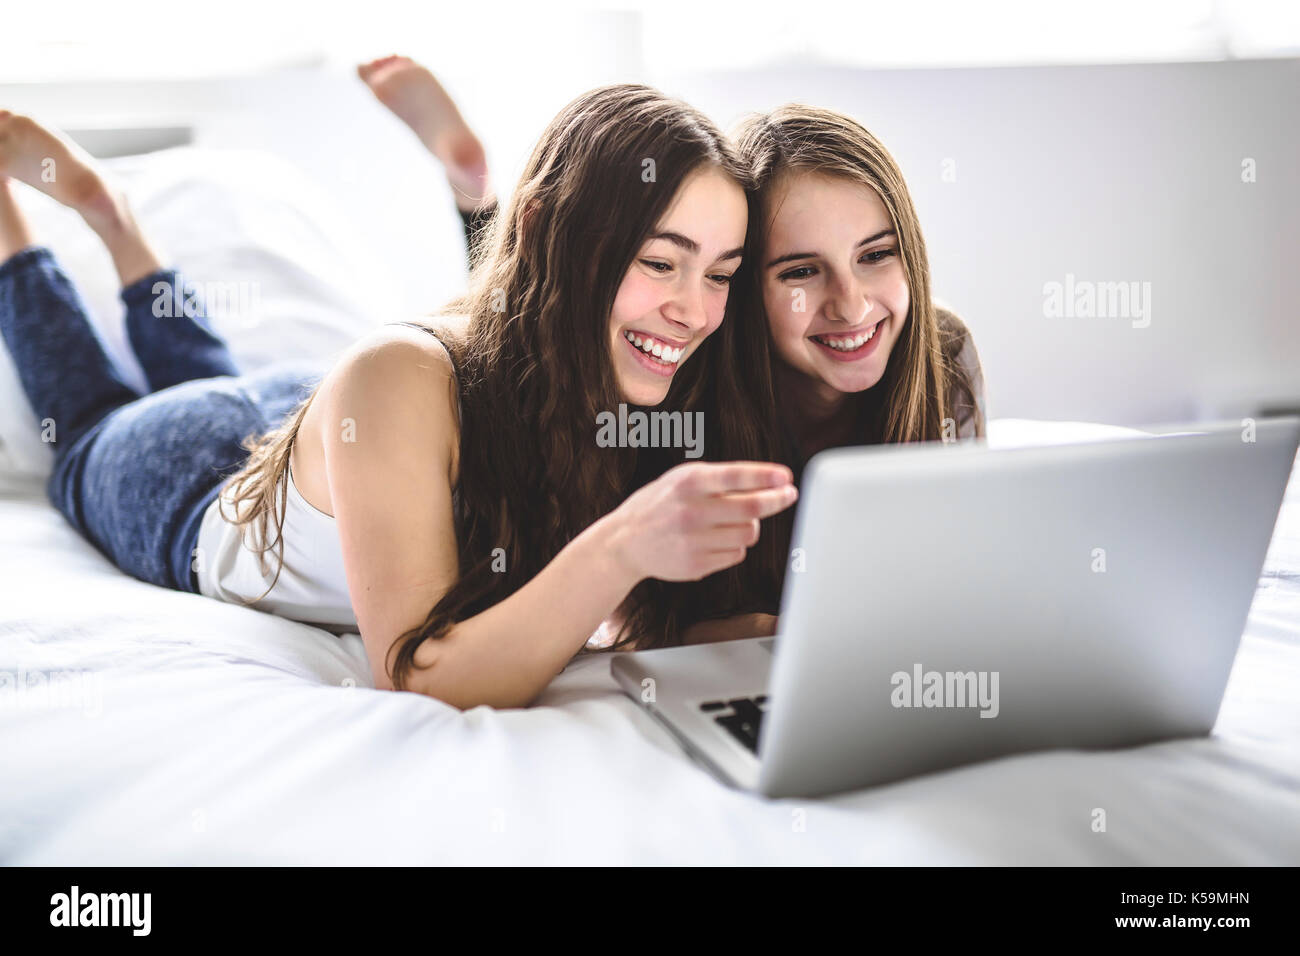 Las niñas adolescentes tumbado en la cama con un portátil Foto de stock